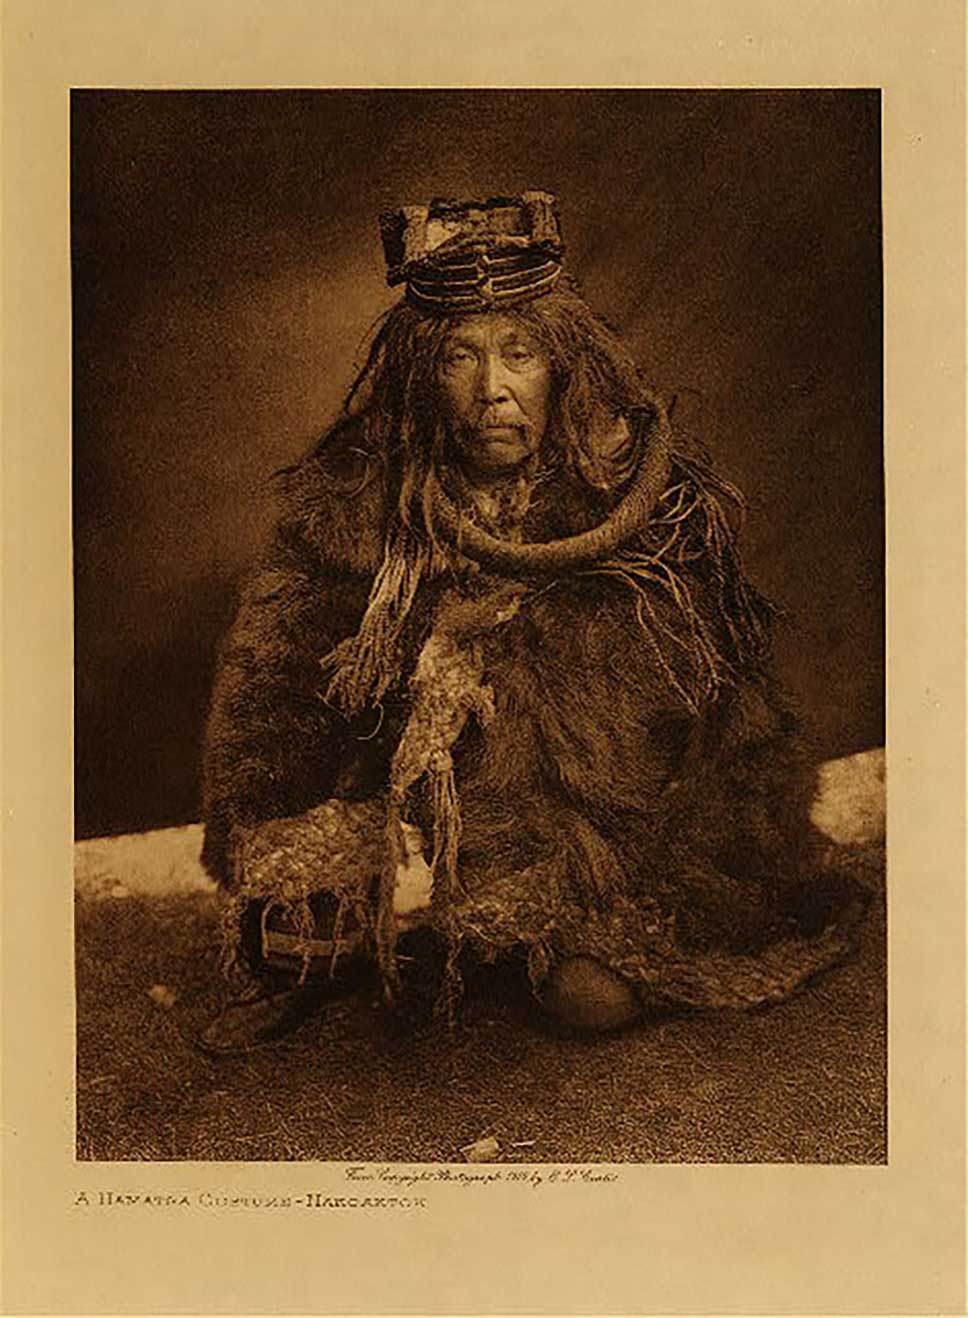 Photographie sépia par Edward Curtis un danseur Hamatsa en attirail d'écorce de cèdre portant une coiffe, un collier et une cape de fourrure à bordure d'écorce